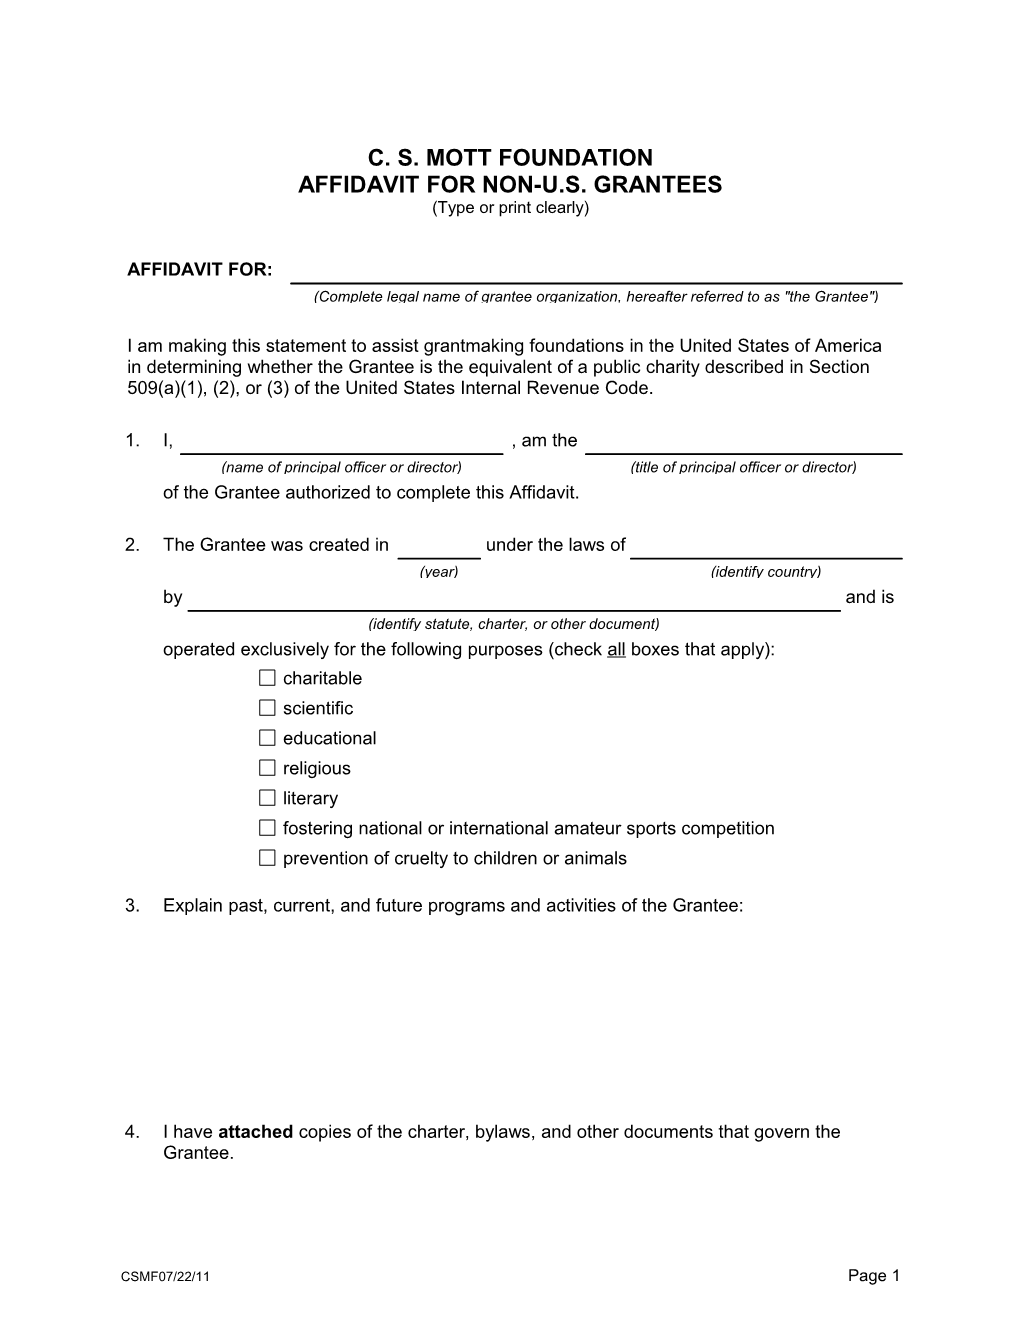 Affidavit for Non-U.S. Grantees